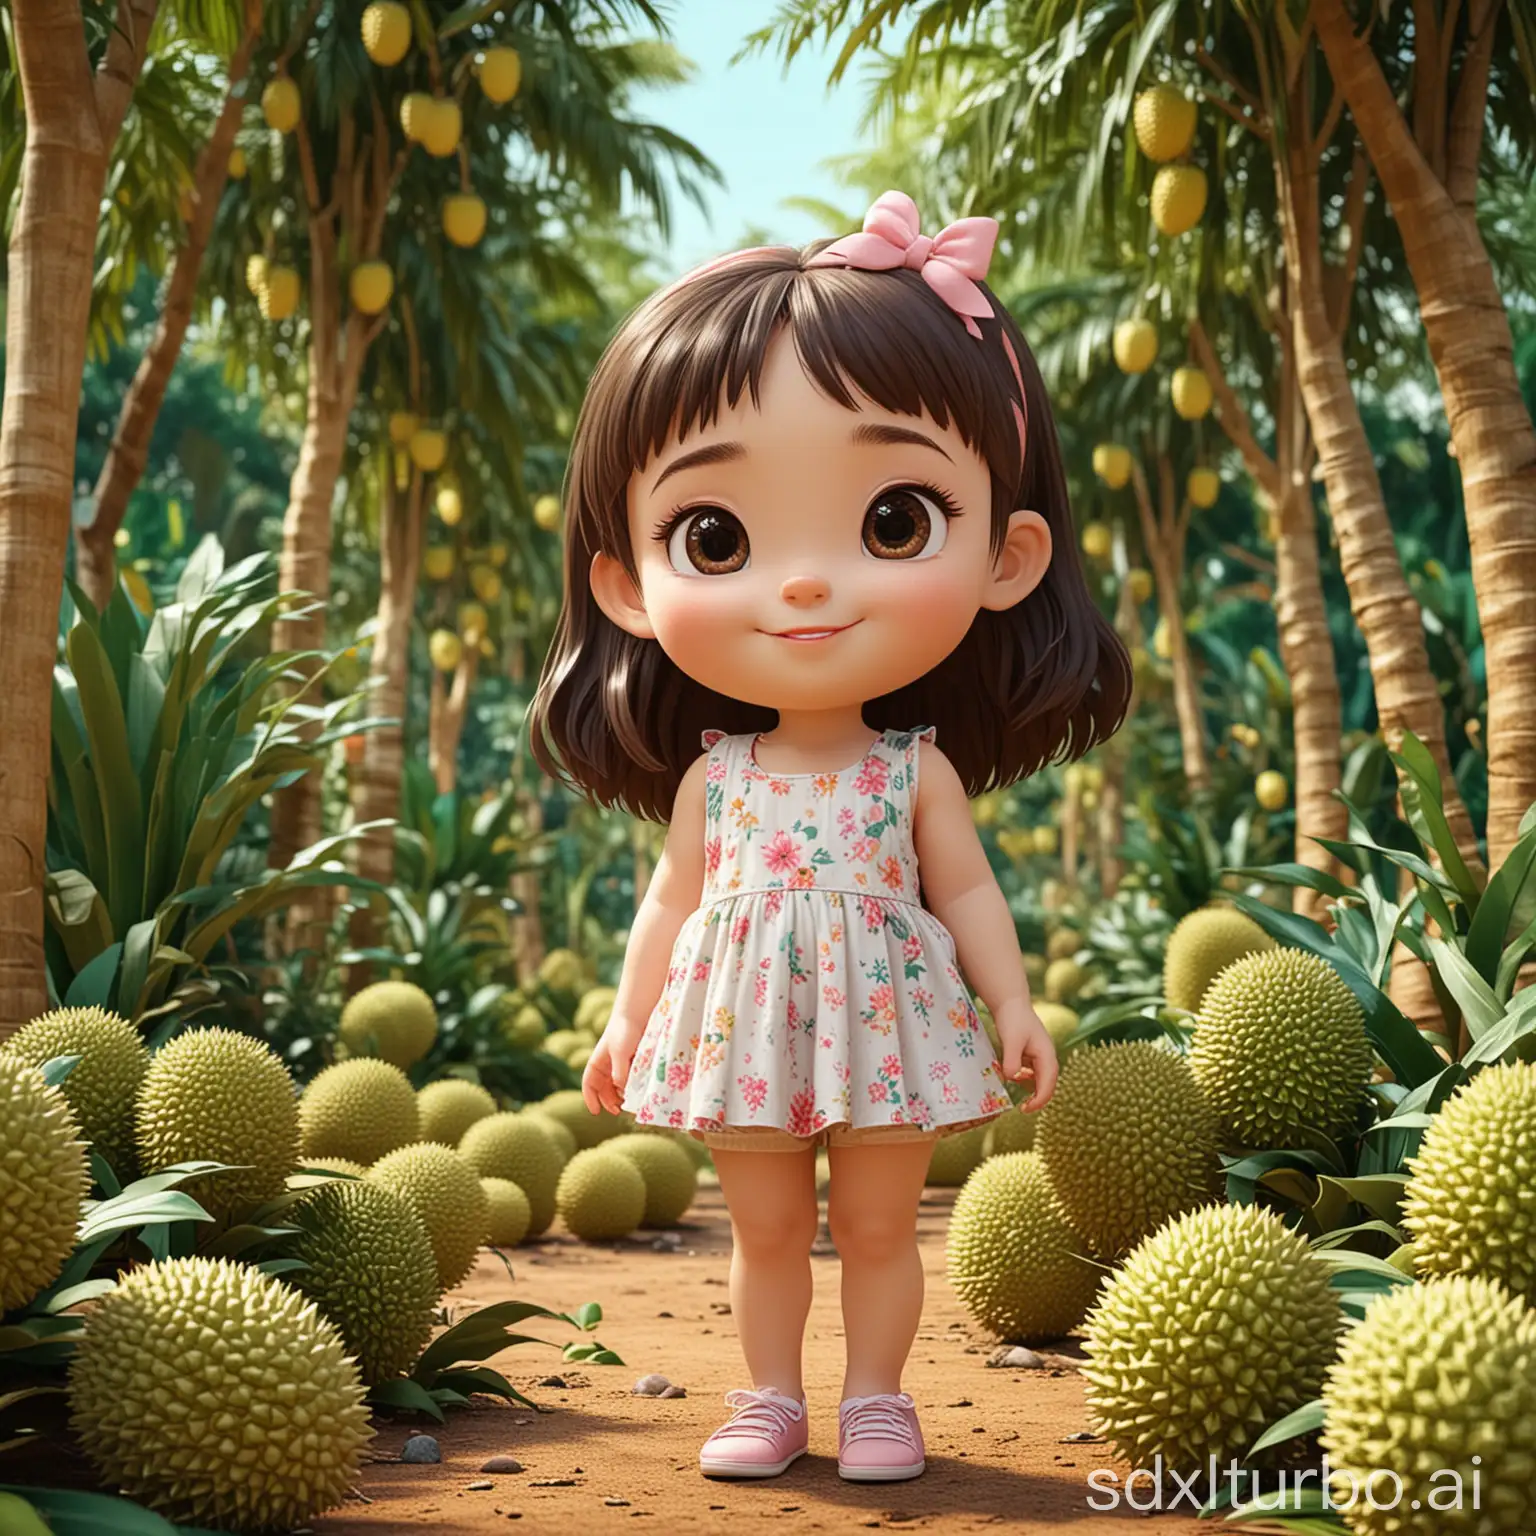 Cute 3D little girl in the durian garden,